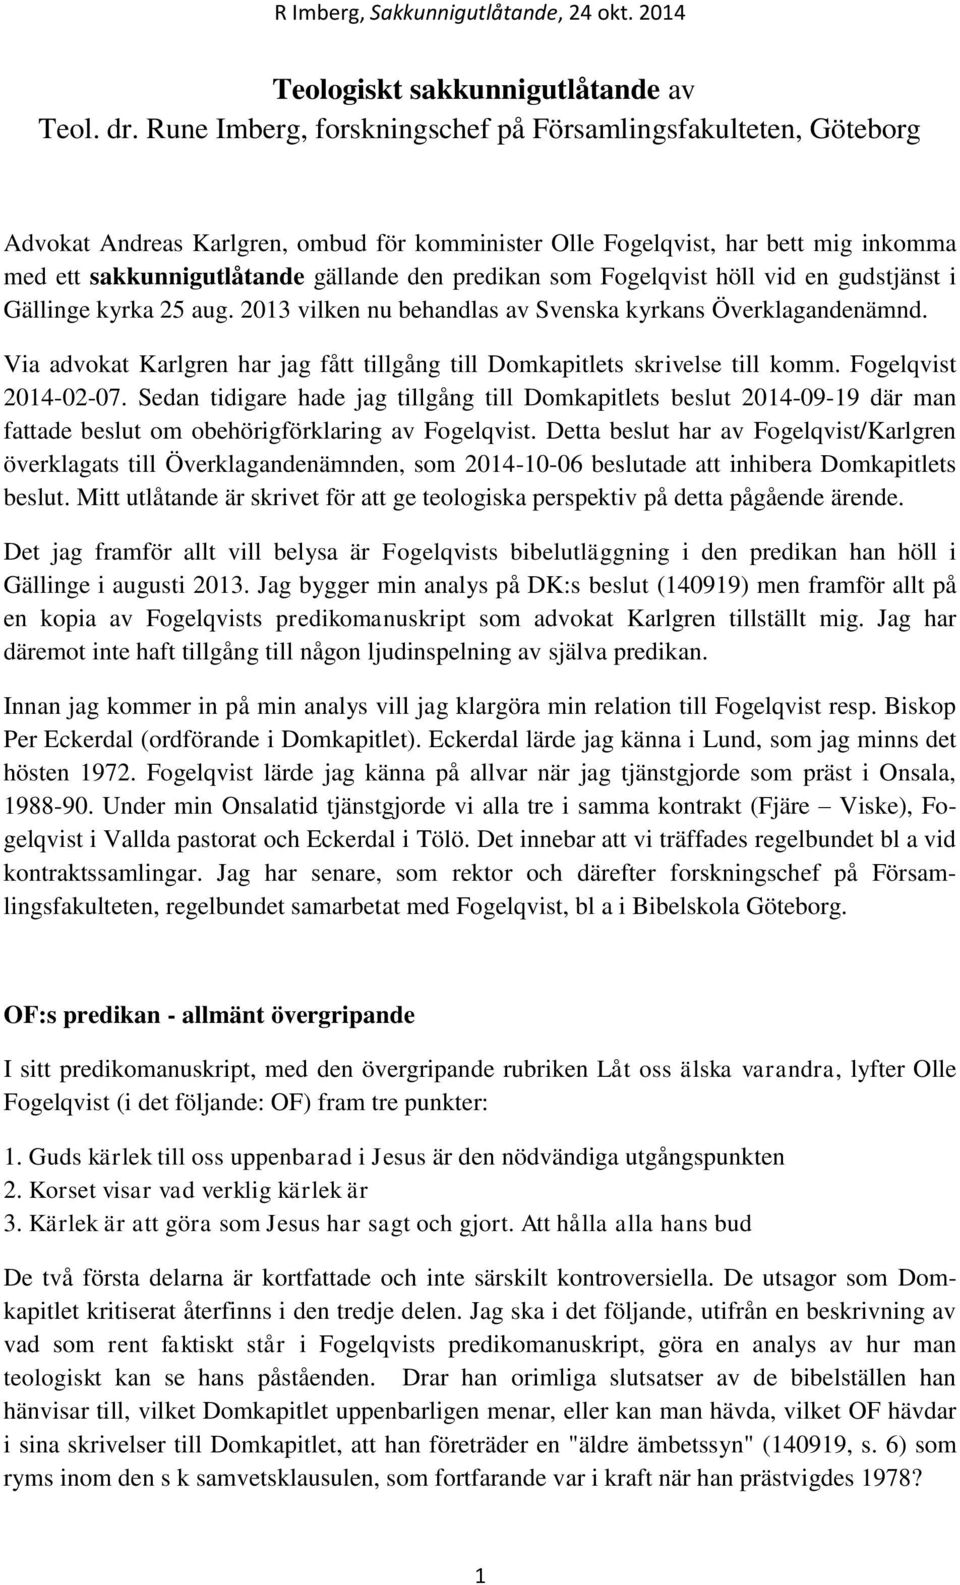 som Fogelqvist höll vid en gudstjänst i Gällinge kyrka 25 aug. 2013 vilken nu behandlas av Svenska kyrkans Överklagandenämnd.